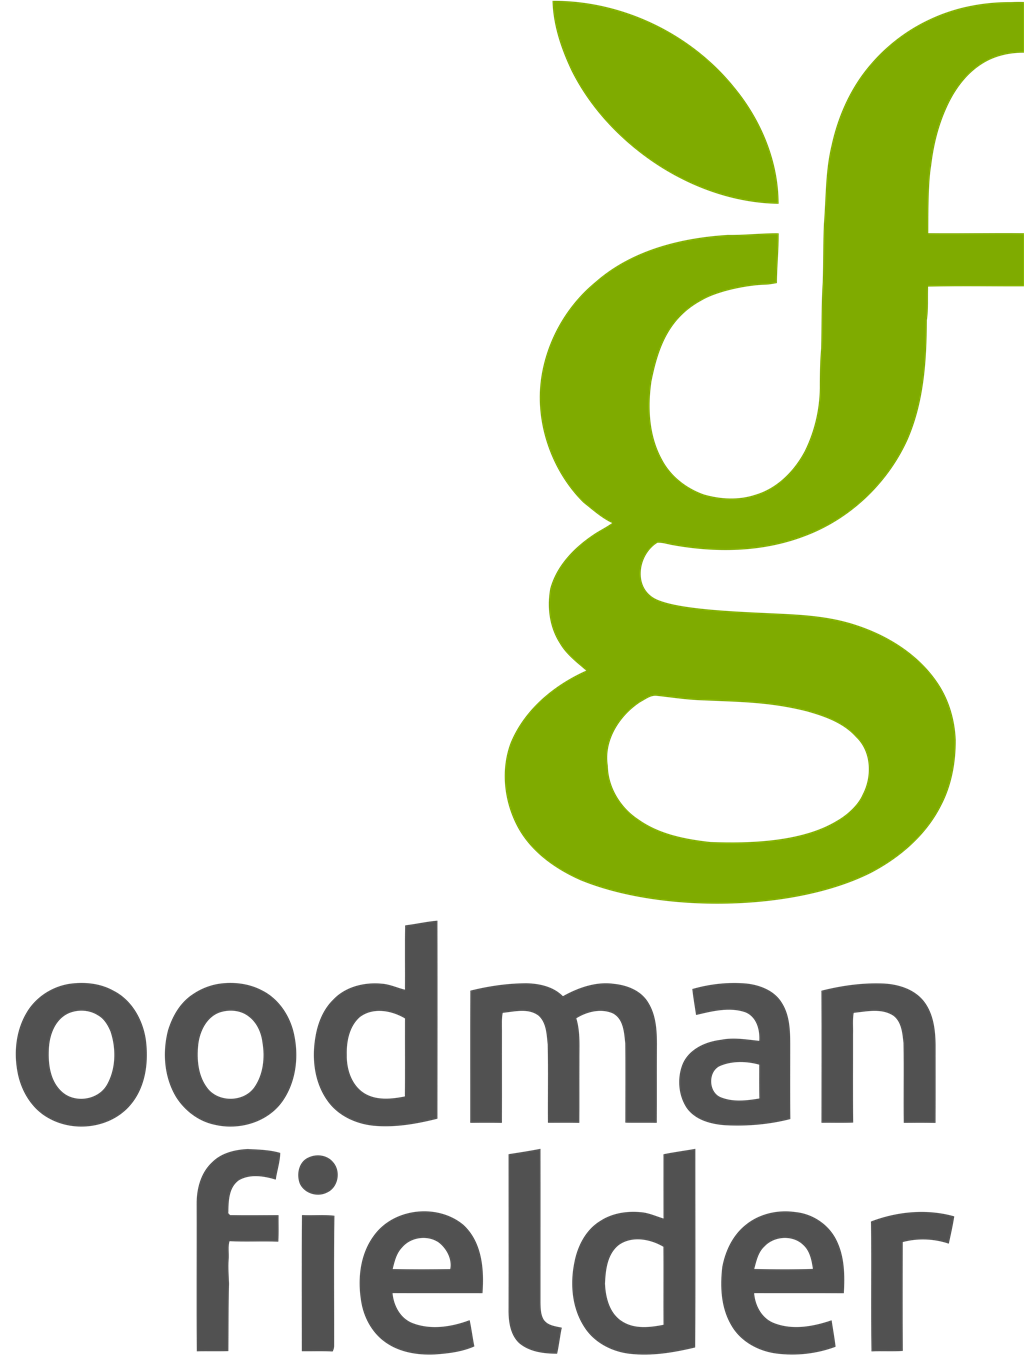 Goodman Fielder logotype, transparent .png, medium, large